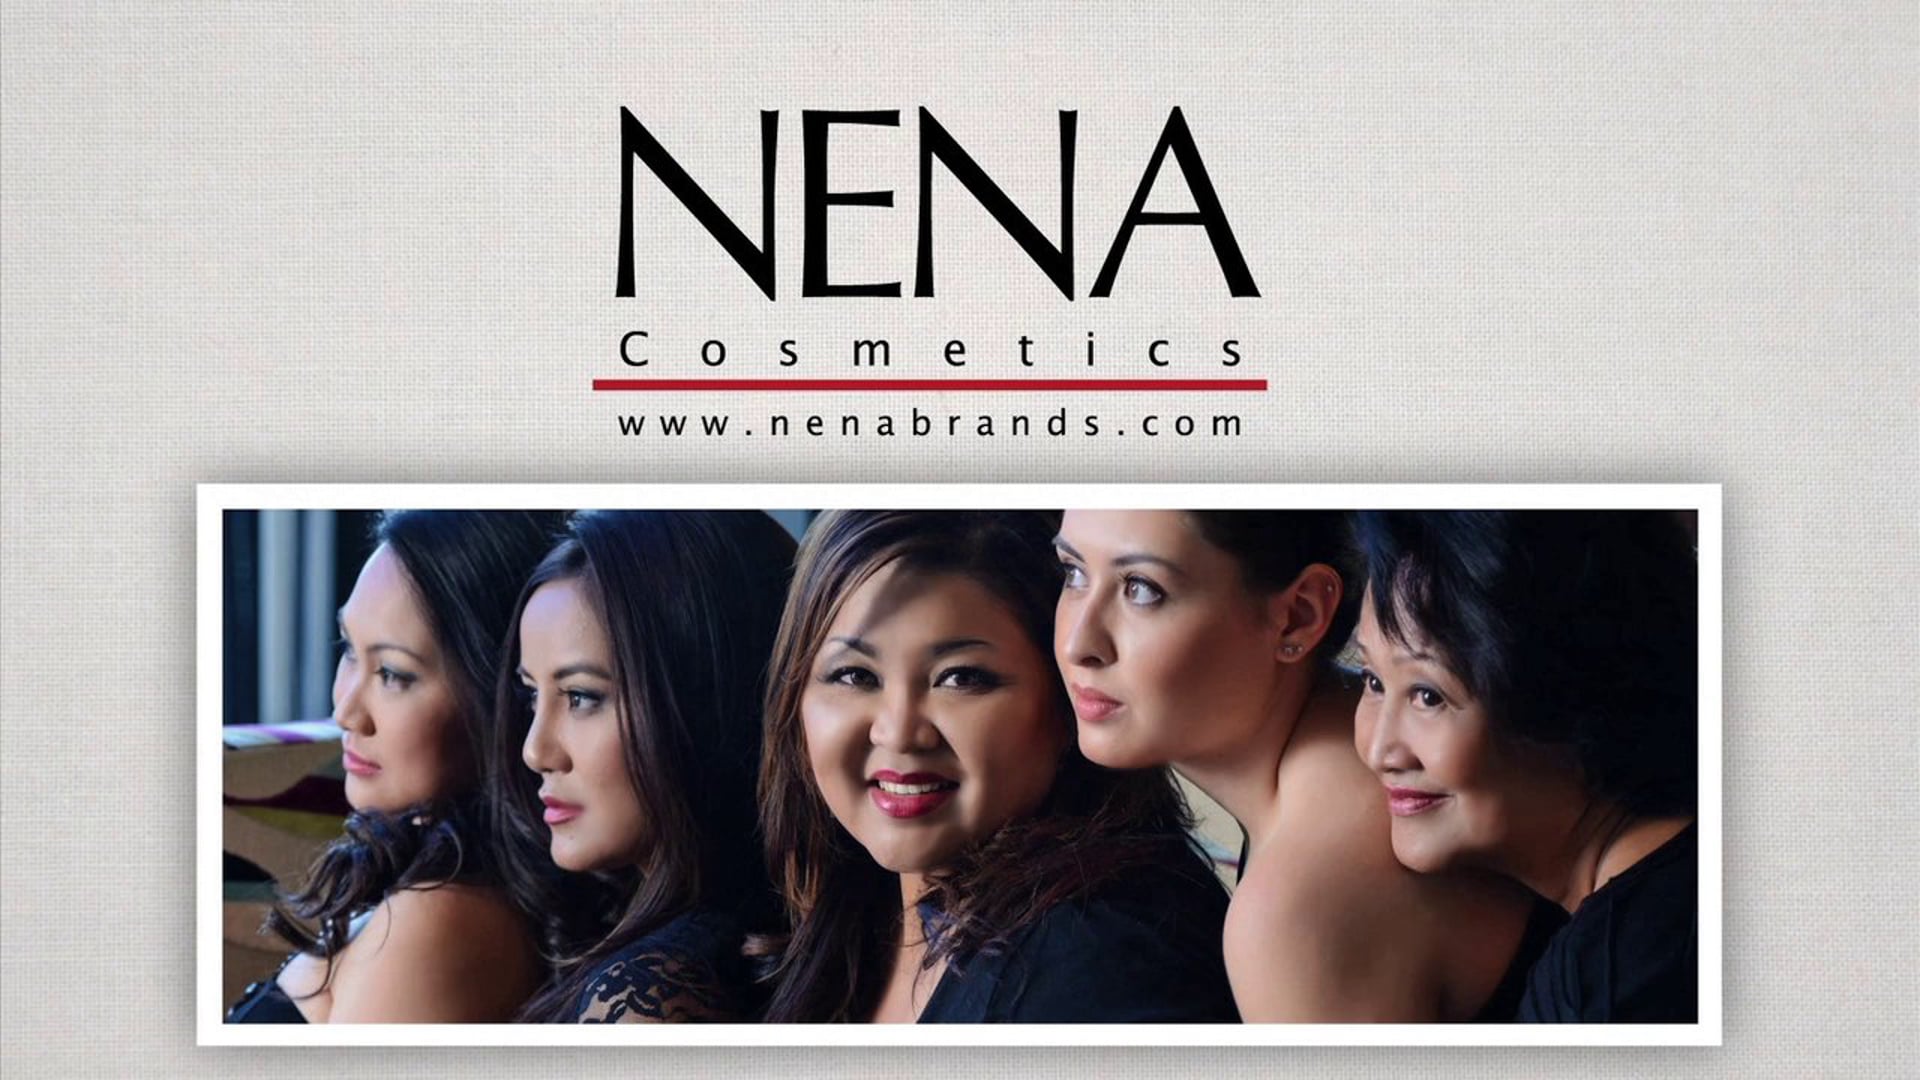 NENA Cosmetics Commercial